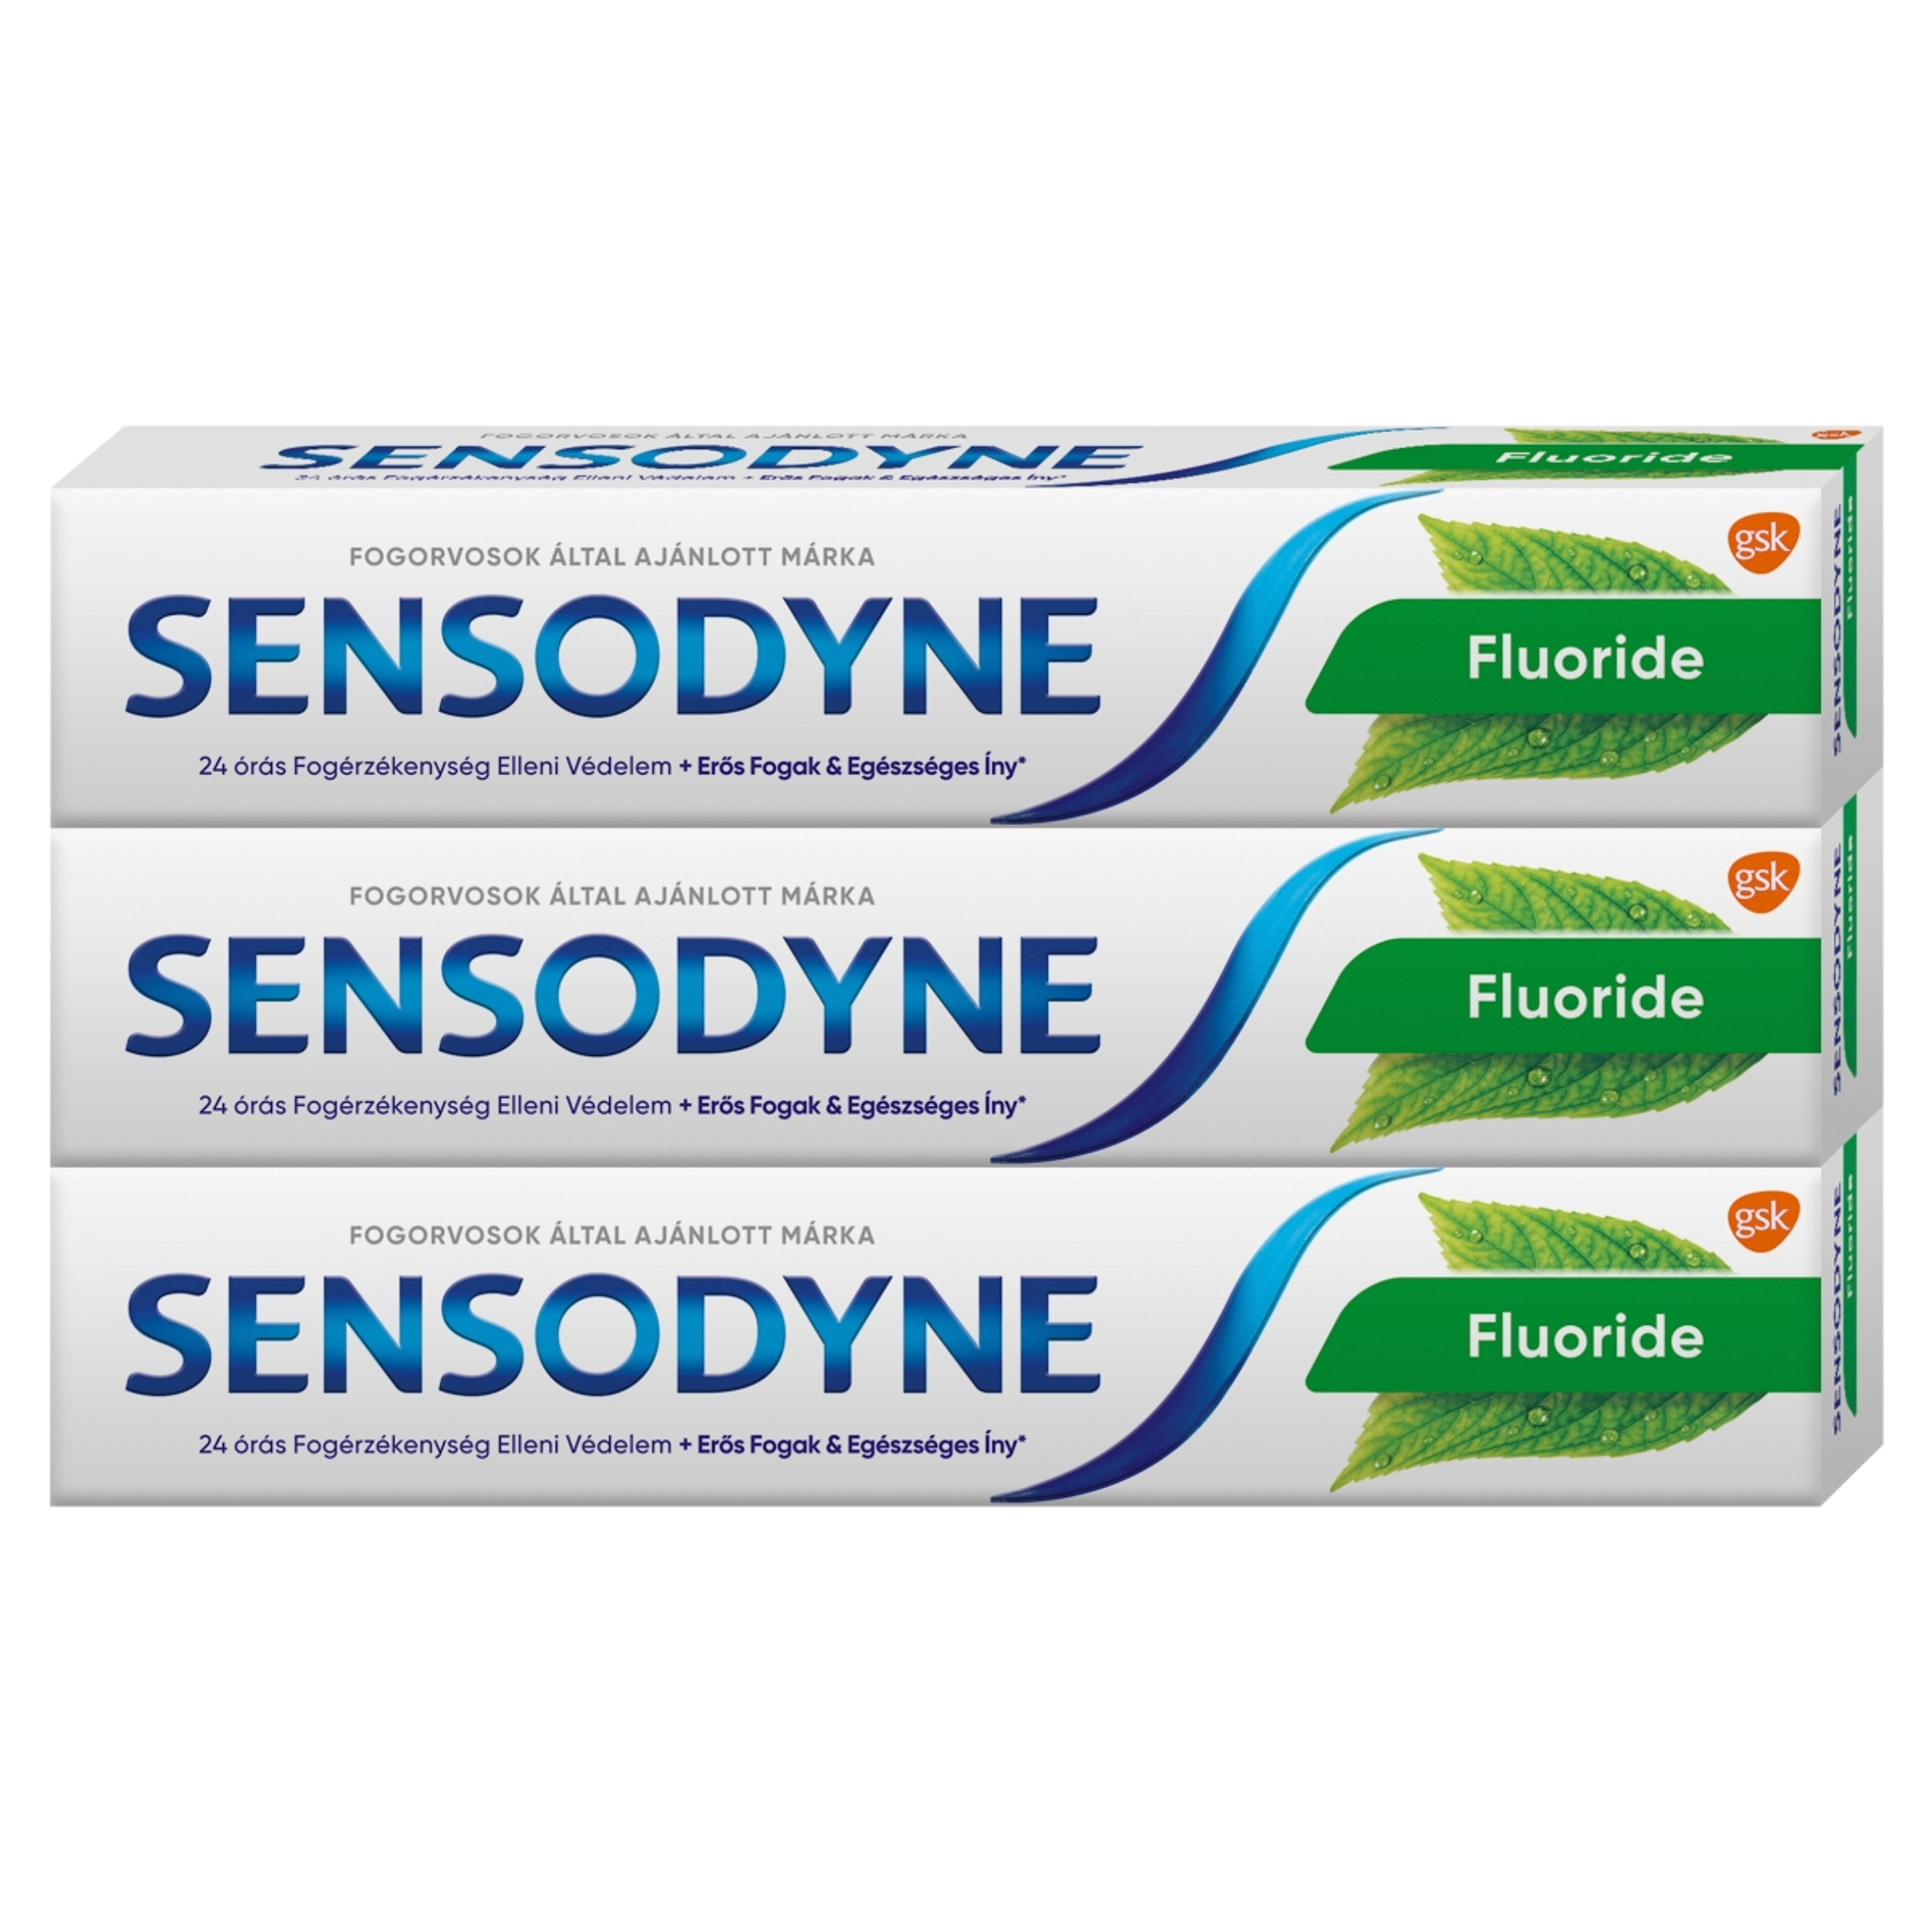 Sensodyne Fluorid fogkrém Trio pack, menta 3x75 ml - 225 ml-1